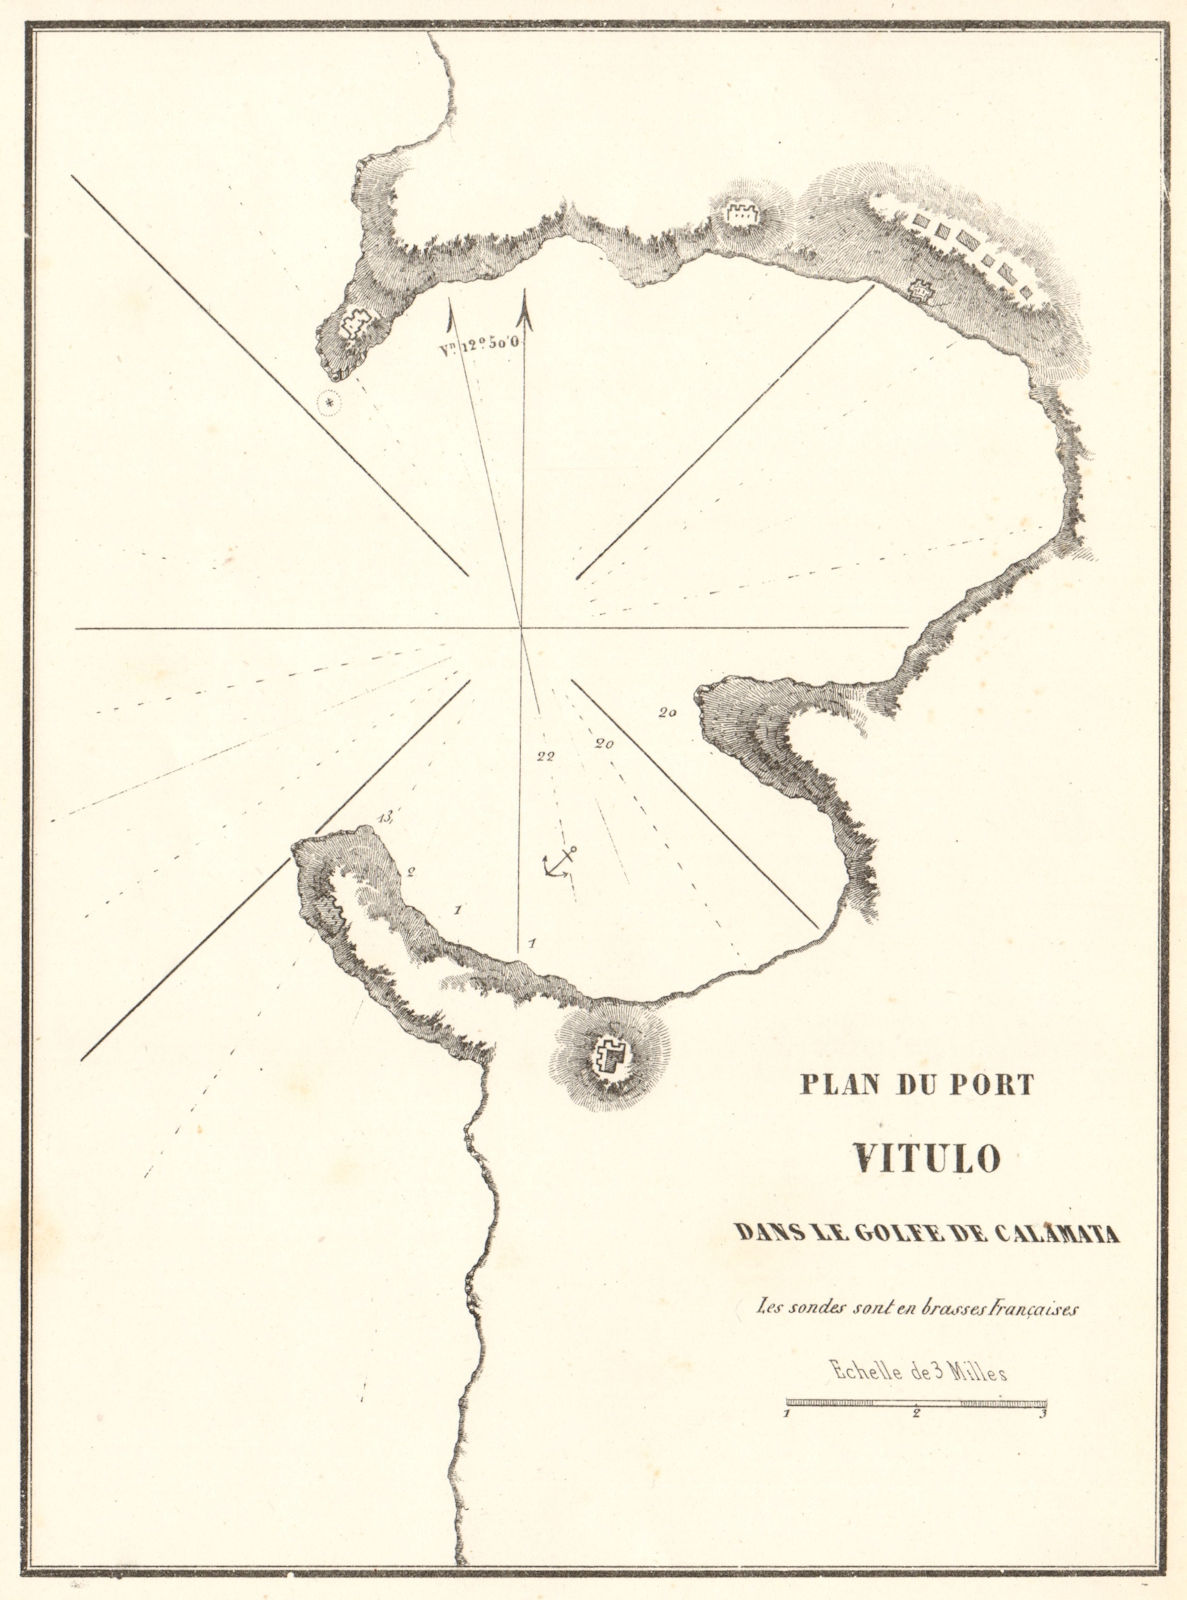 Stoupa. 'Port Vitulo… Golfe de Calamata'. Greece. Peloponnese. GAUTTIER 1854 map